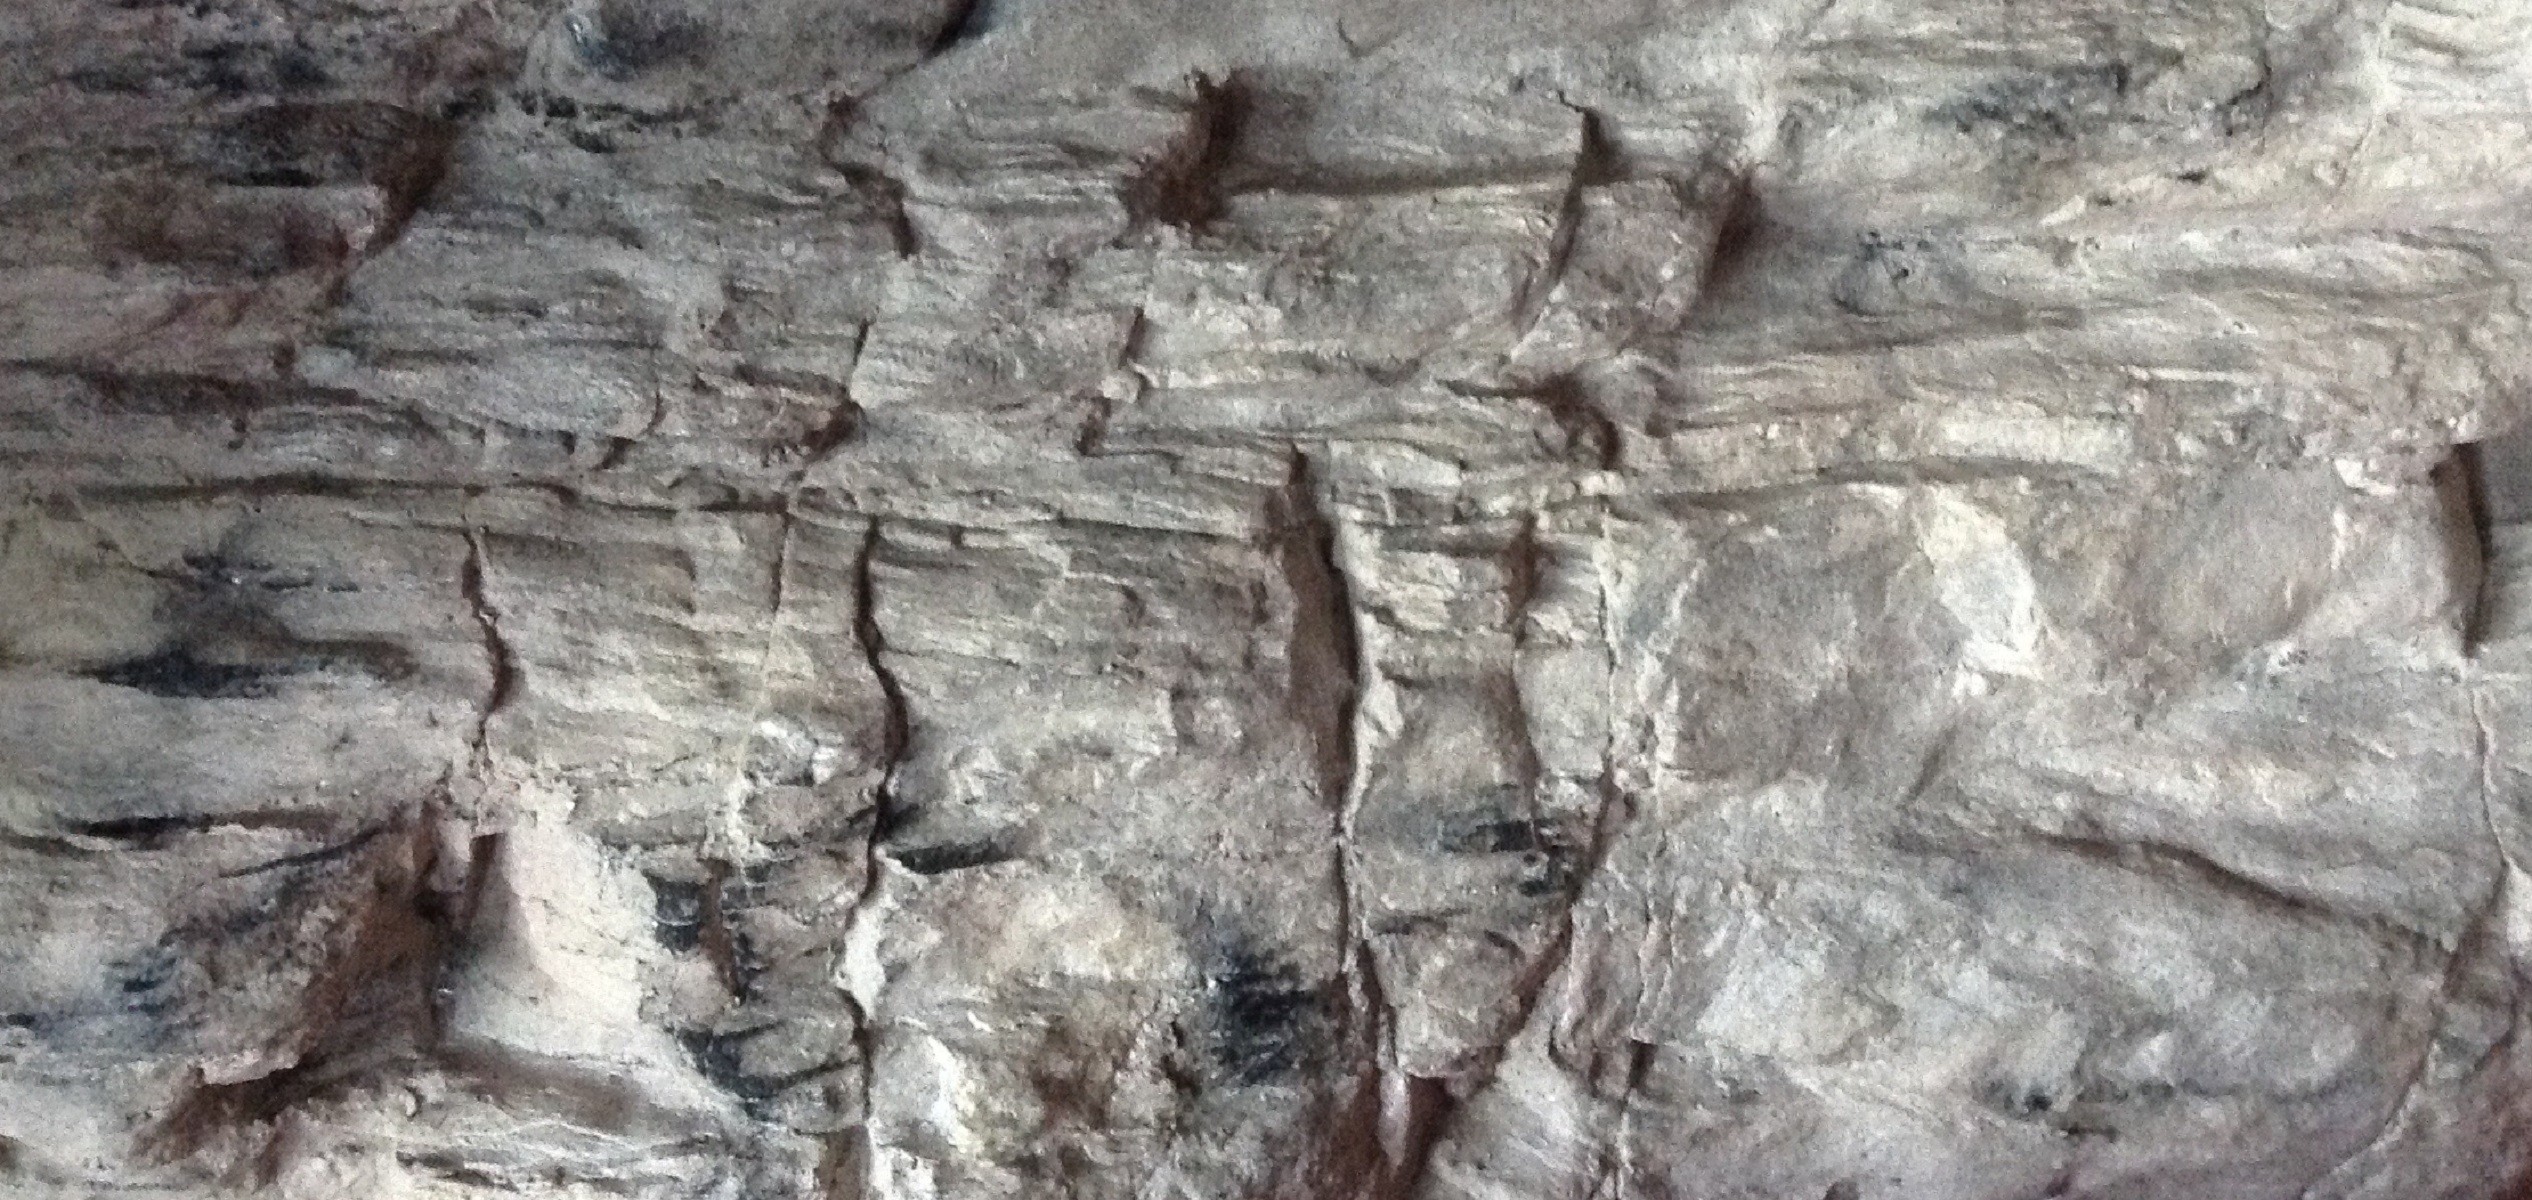 Текстура камня в пещере